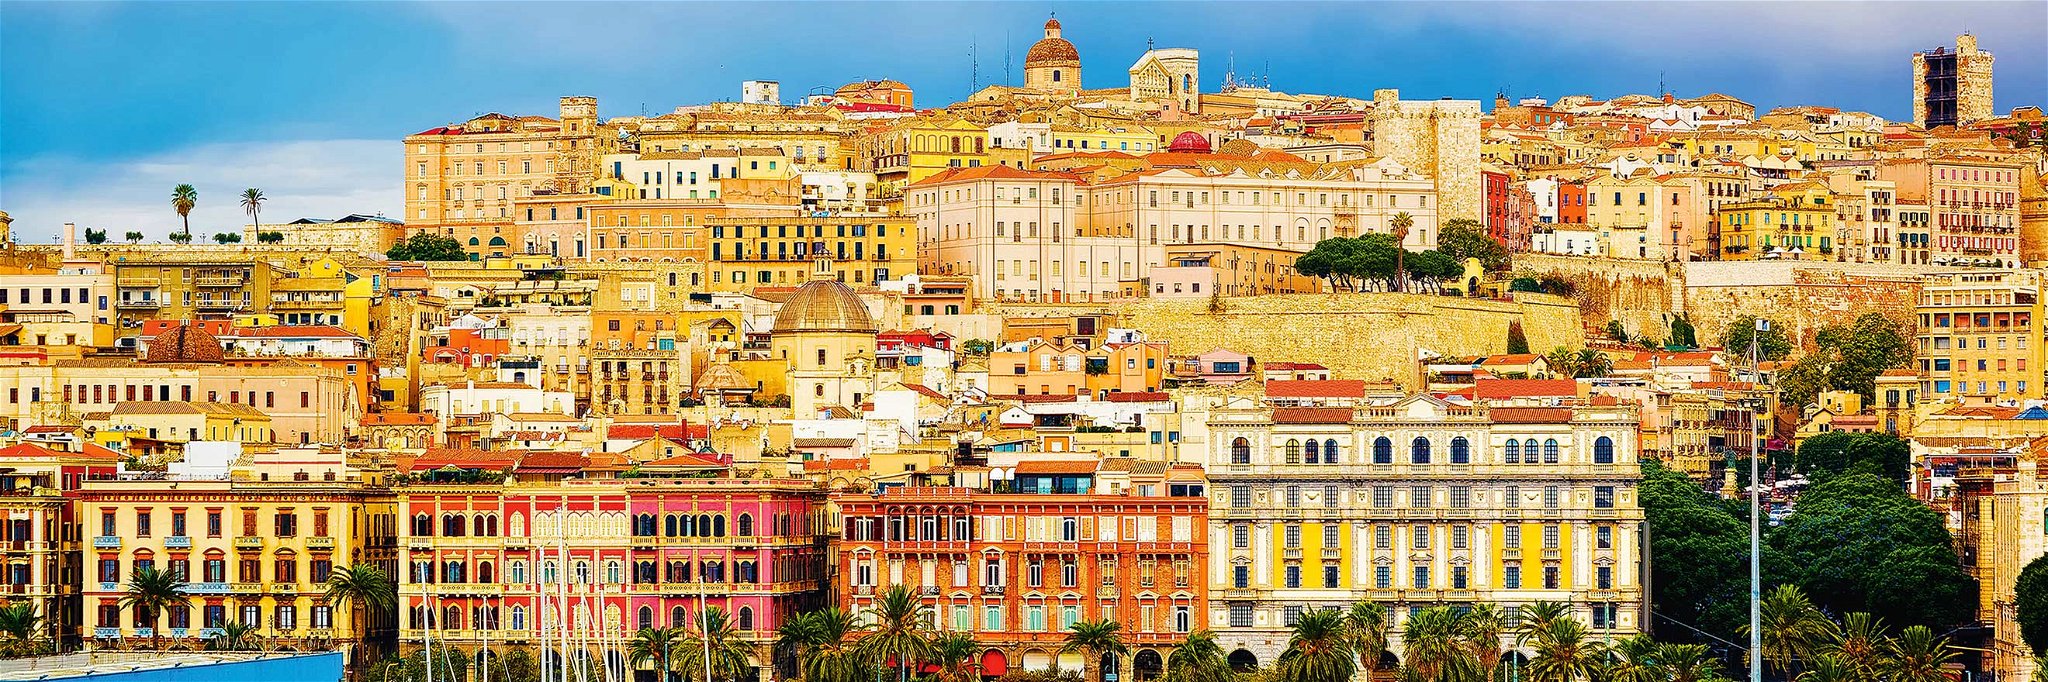 Die pittoreske Inselhauptstadt&nbsp;liegt direkt am Golf von Cagliari,&nbsp;der auch&nbsp;»Golf der Engel«&nbsp;genannt wird.